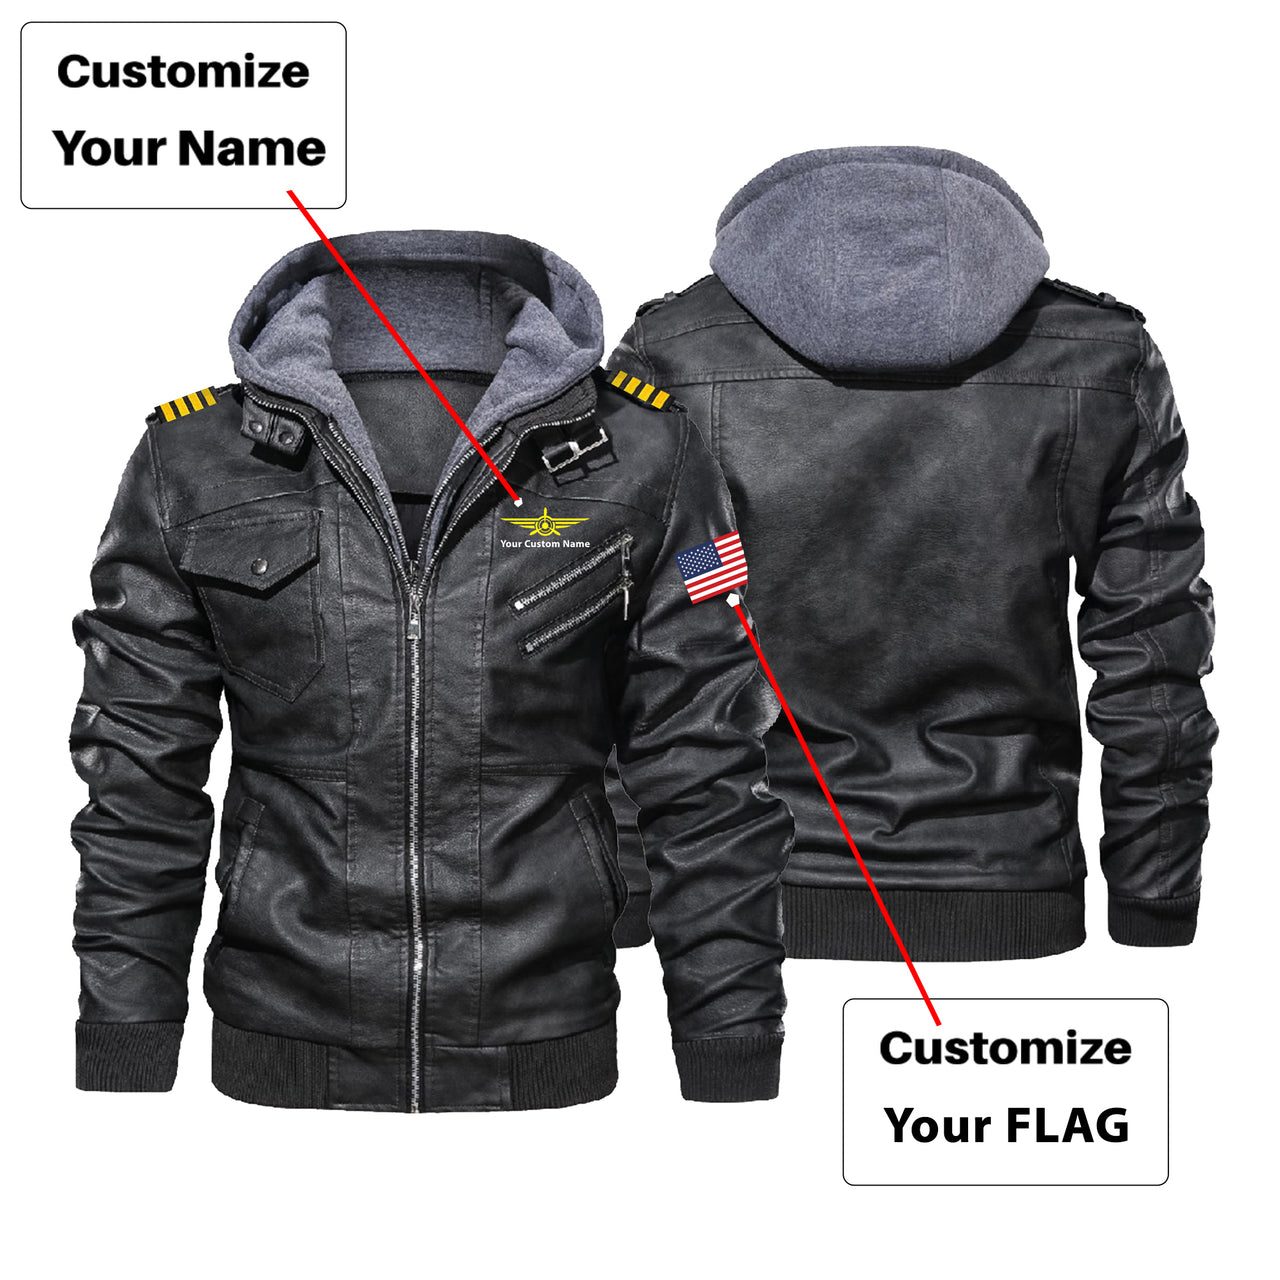 Custom Flag & Name with EPAULETTES "Badge 3" Designed Hooded Leather Jackets